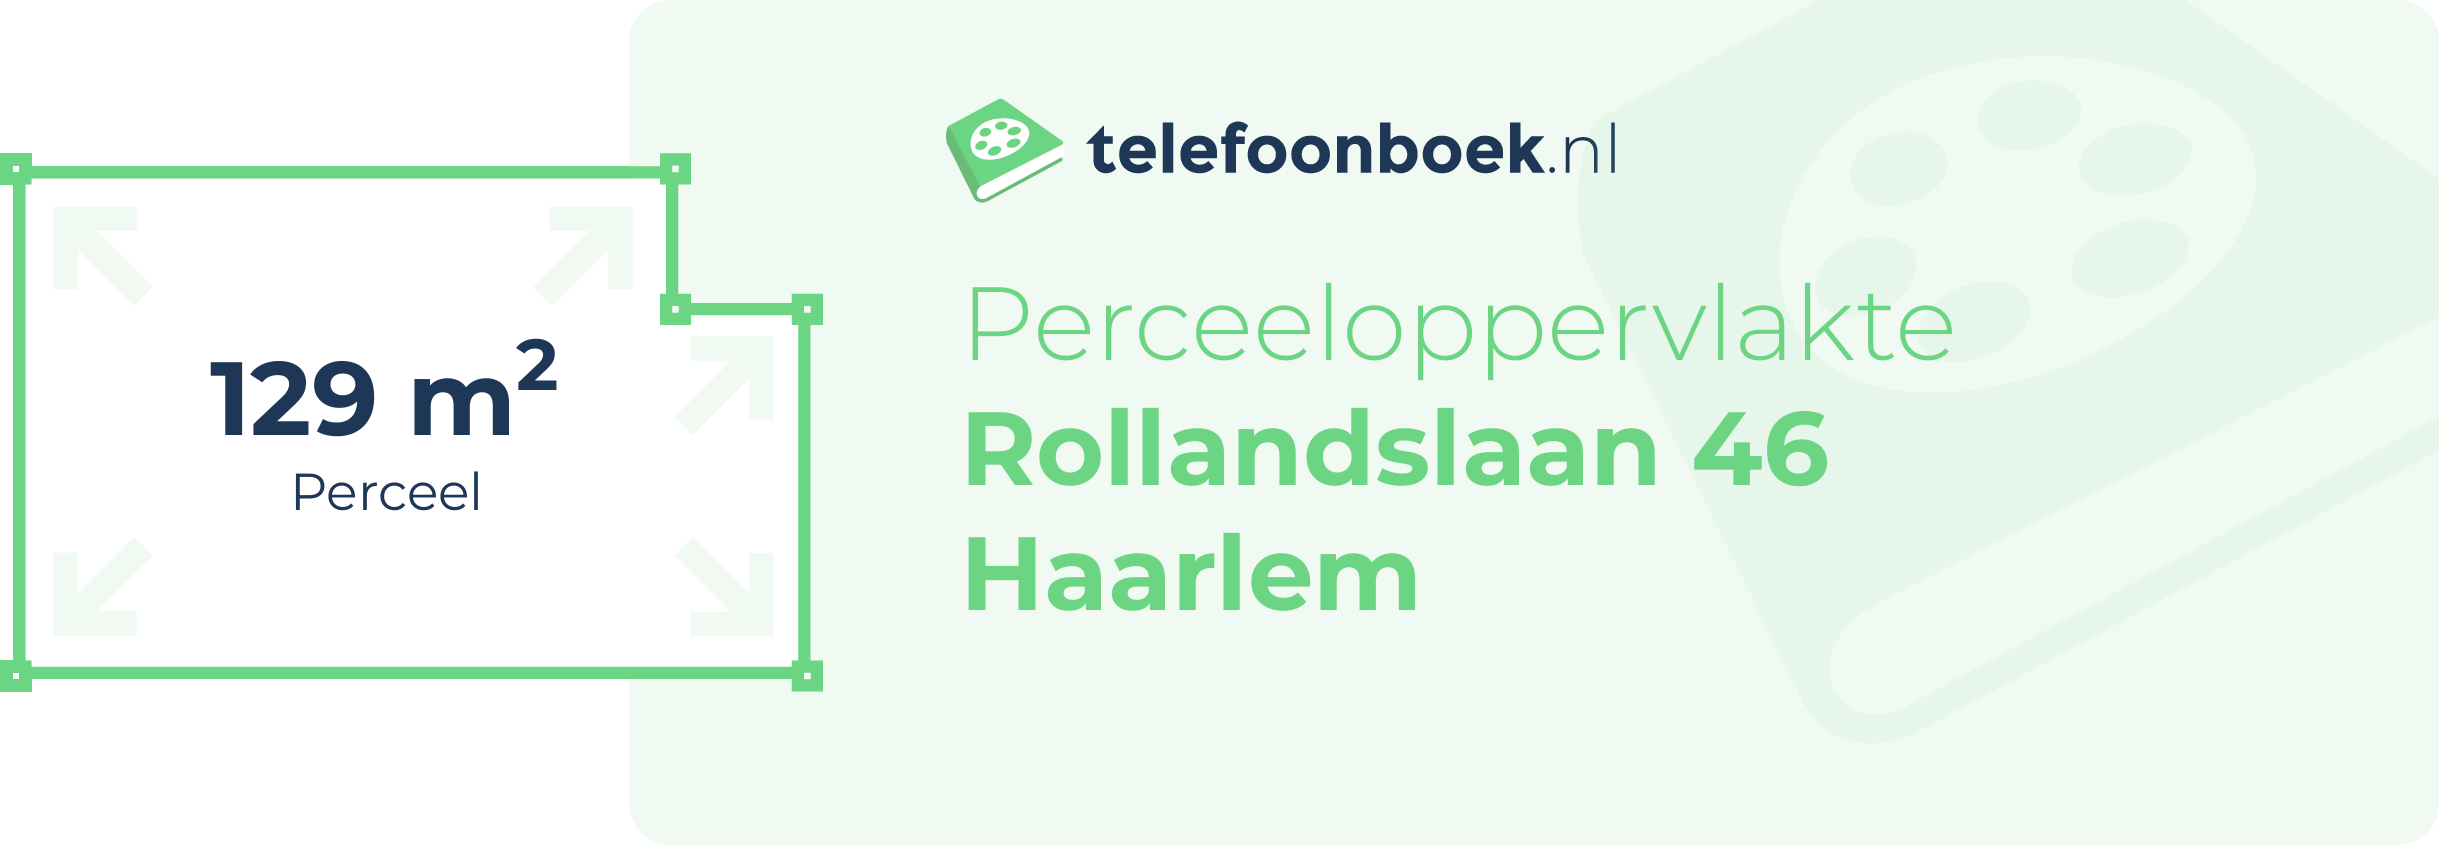 Perceeloppervlakte Rollandslaan 46 Haarlem